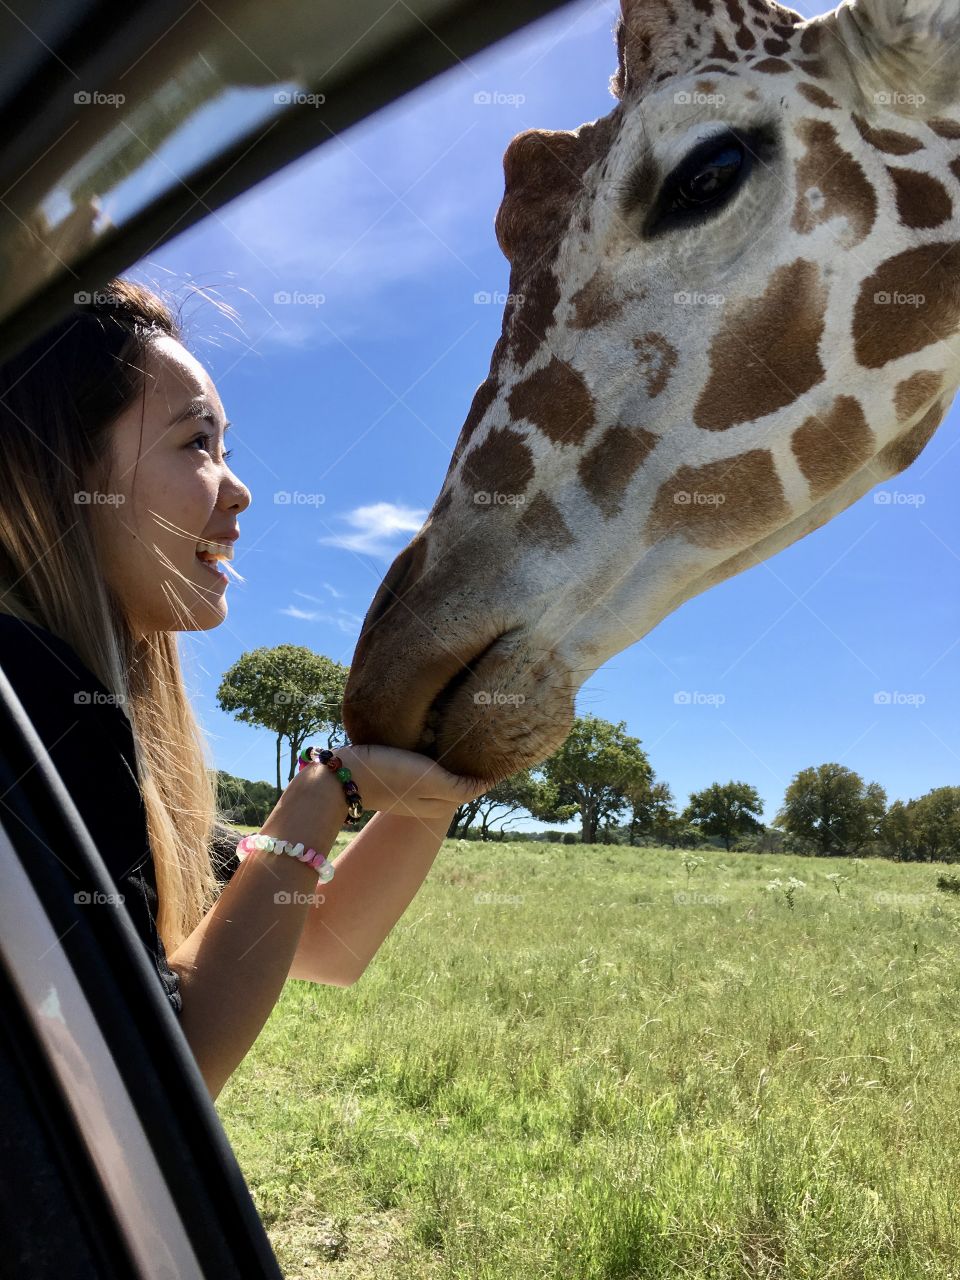 Feeding my friend giraffe